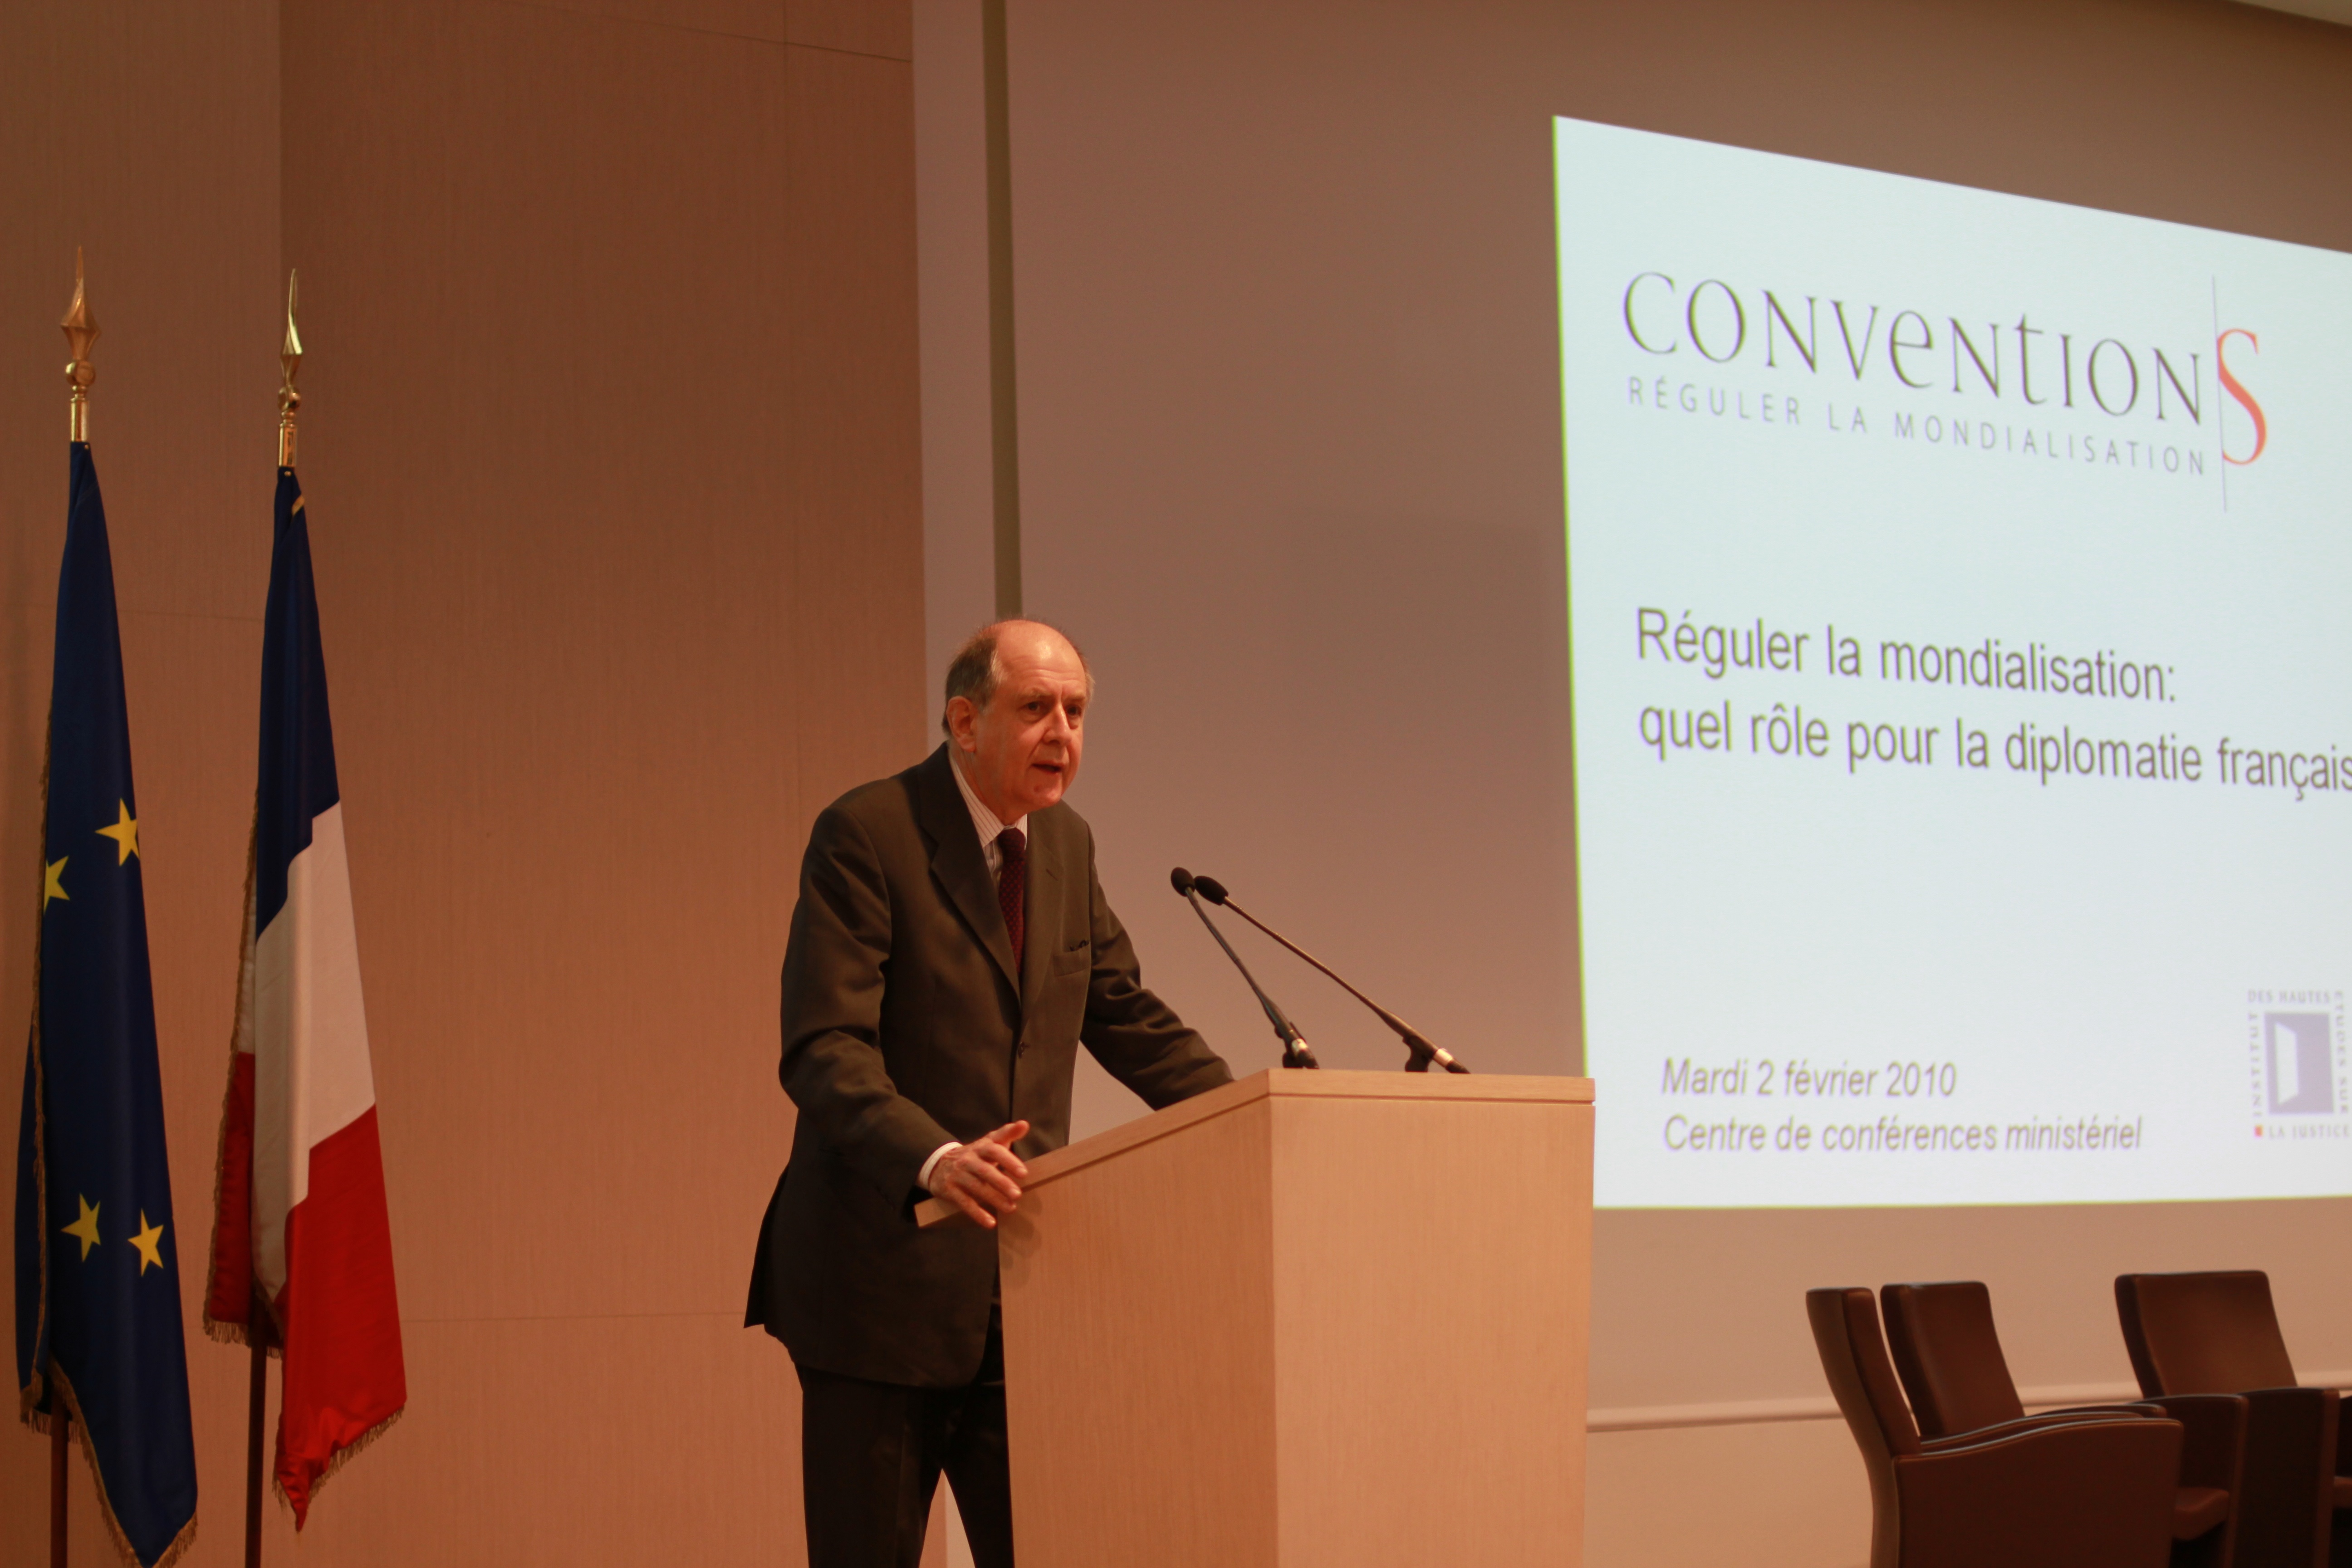 Jean-Marc Sauvé Conventions